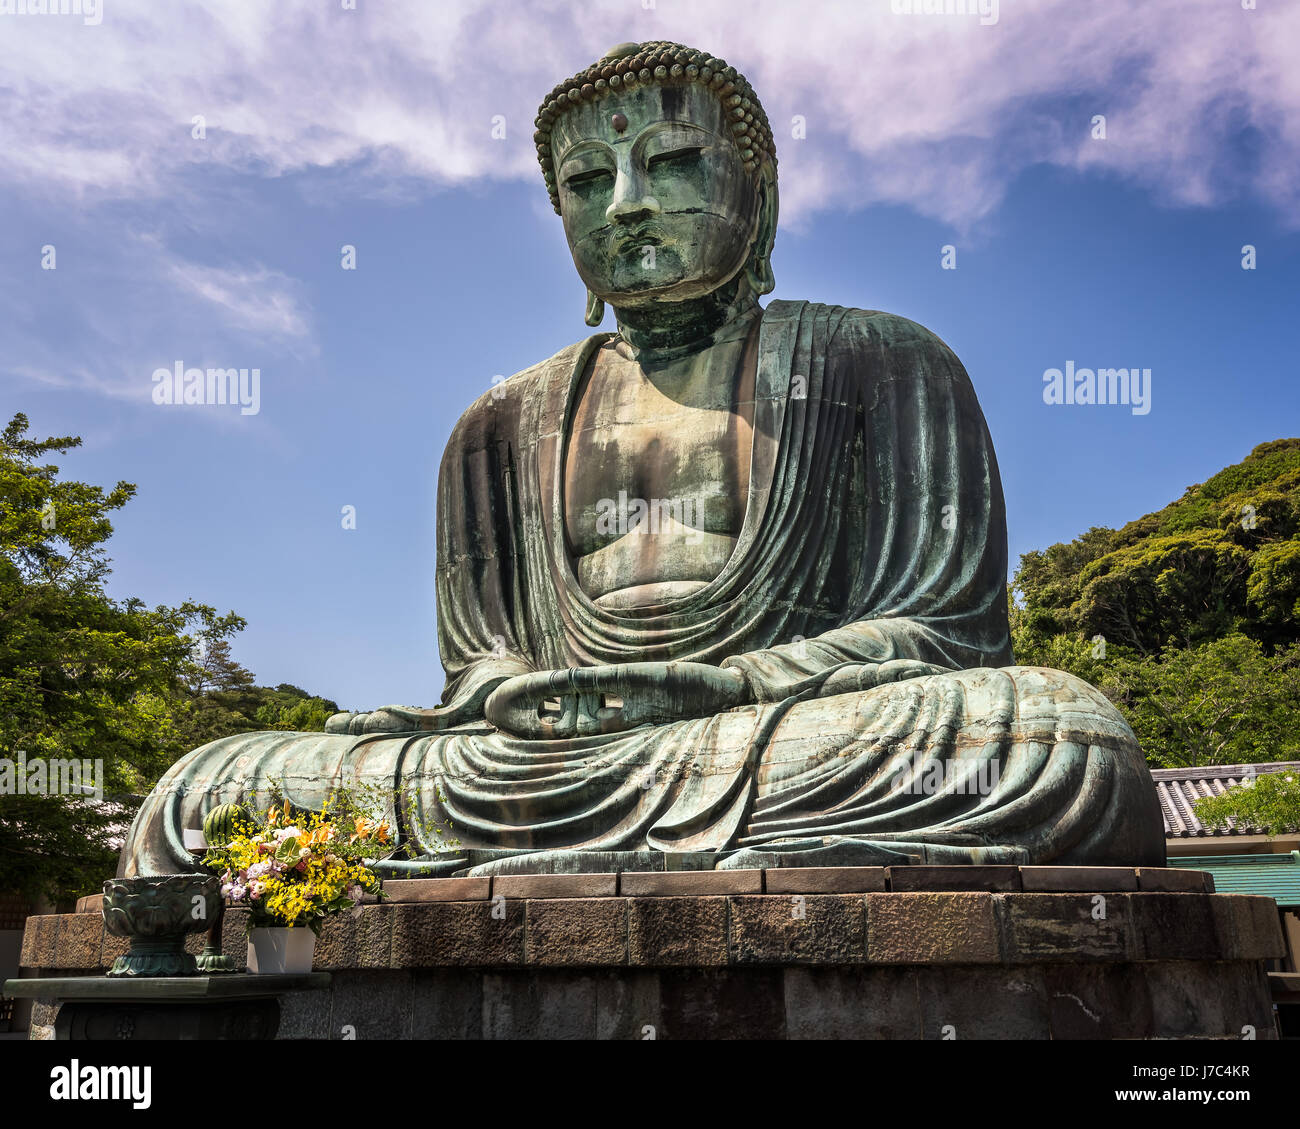 Il grande Buddha di Kamakura (Daibutsu di Kamakura), una statua di bronzo di Buddha Amida nel Tempio Kotokuin a Kamakura, Kanagawa, Giappone Foto Stock